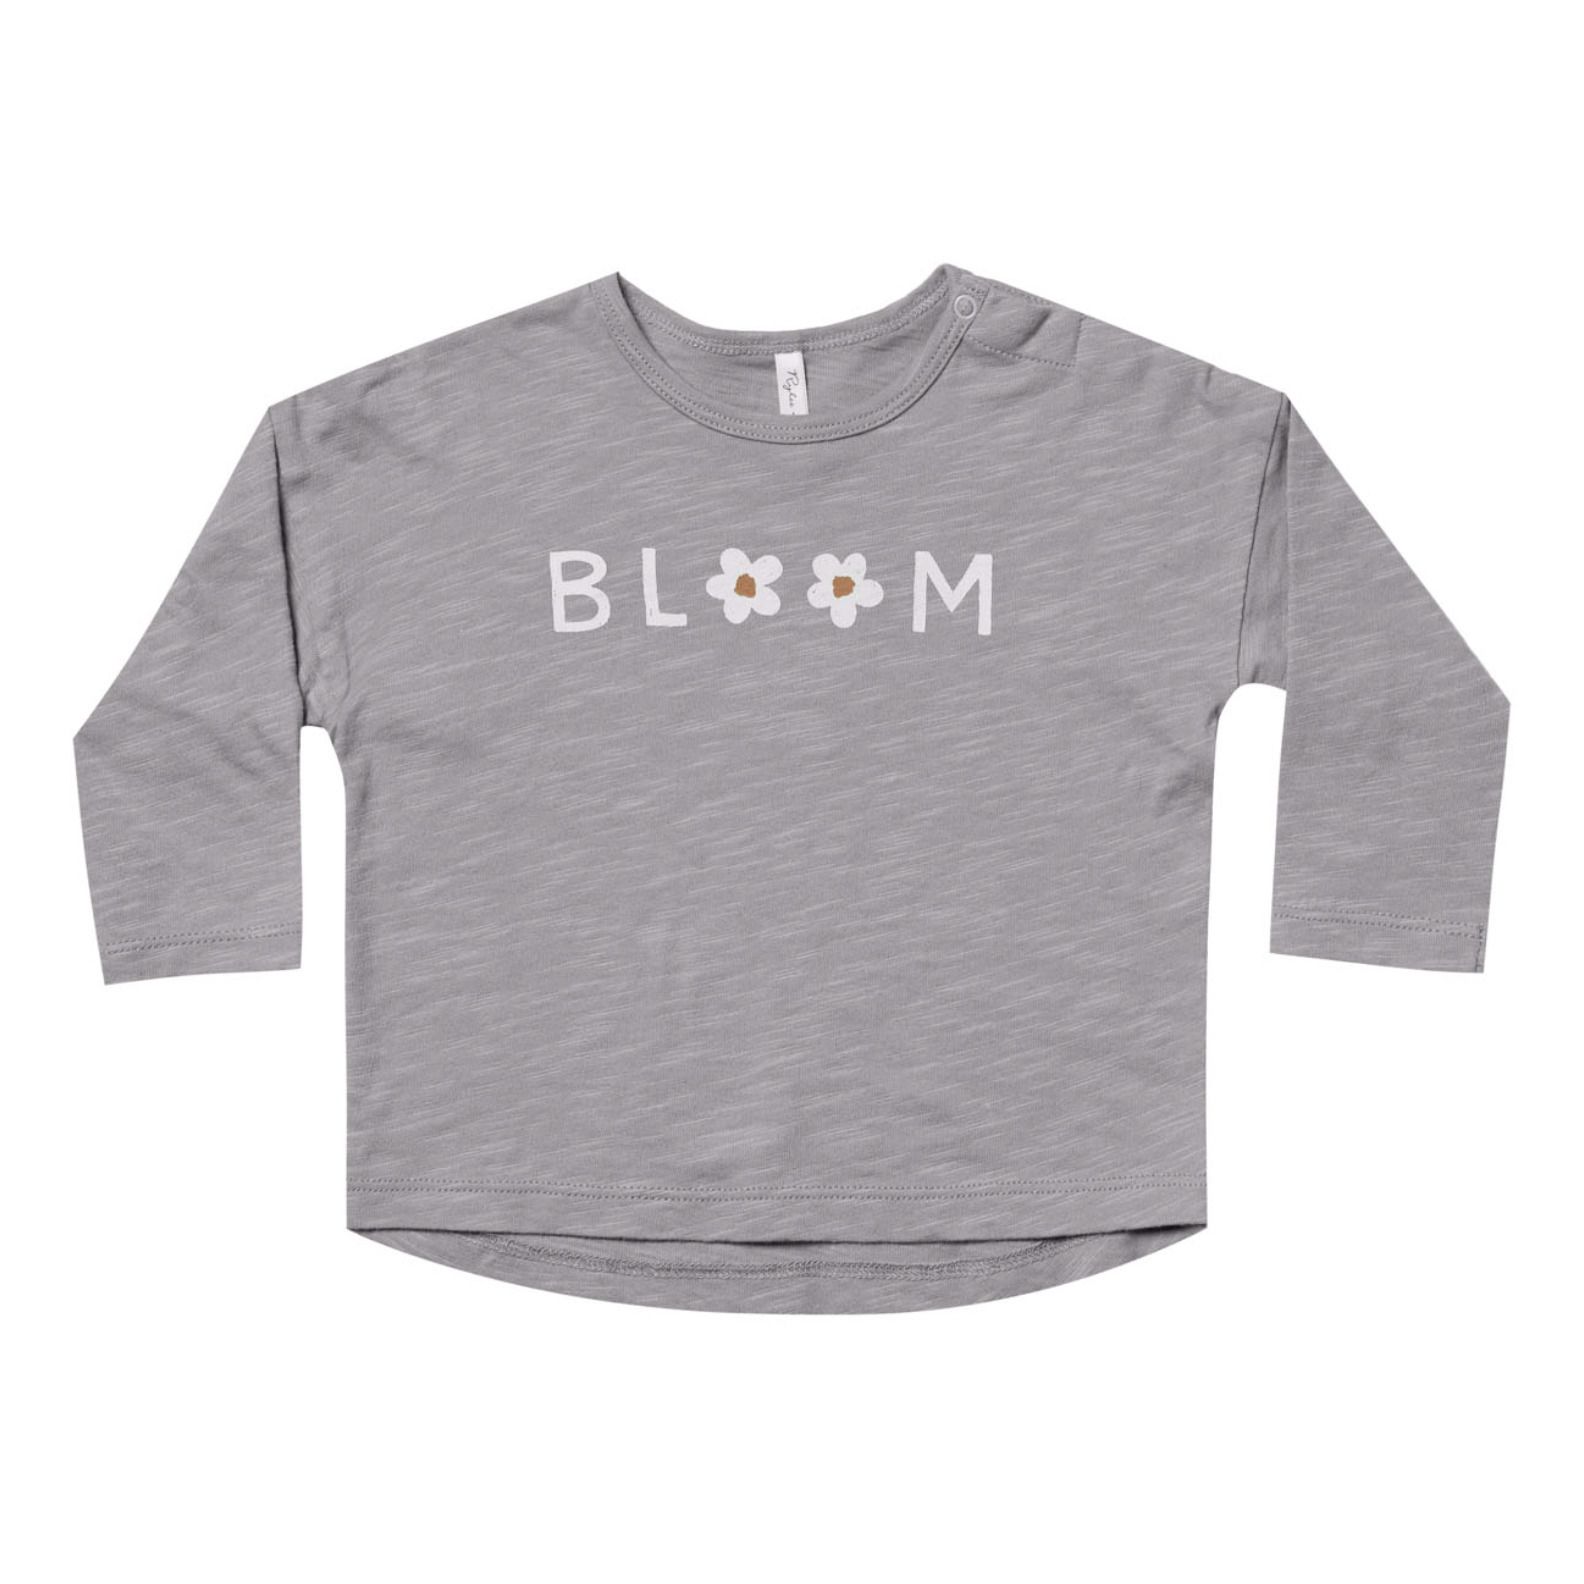 Bloom - T-shirt manches longues pour Homme